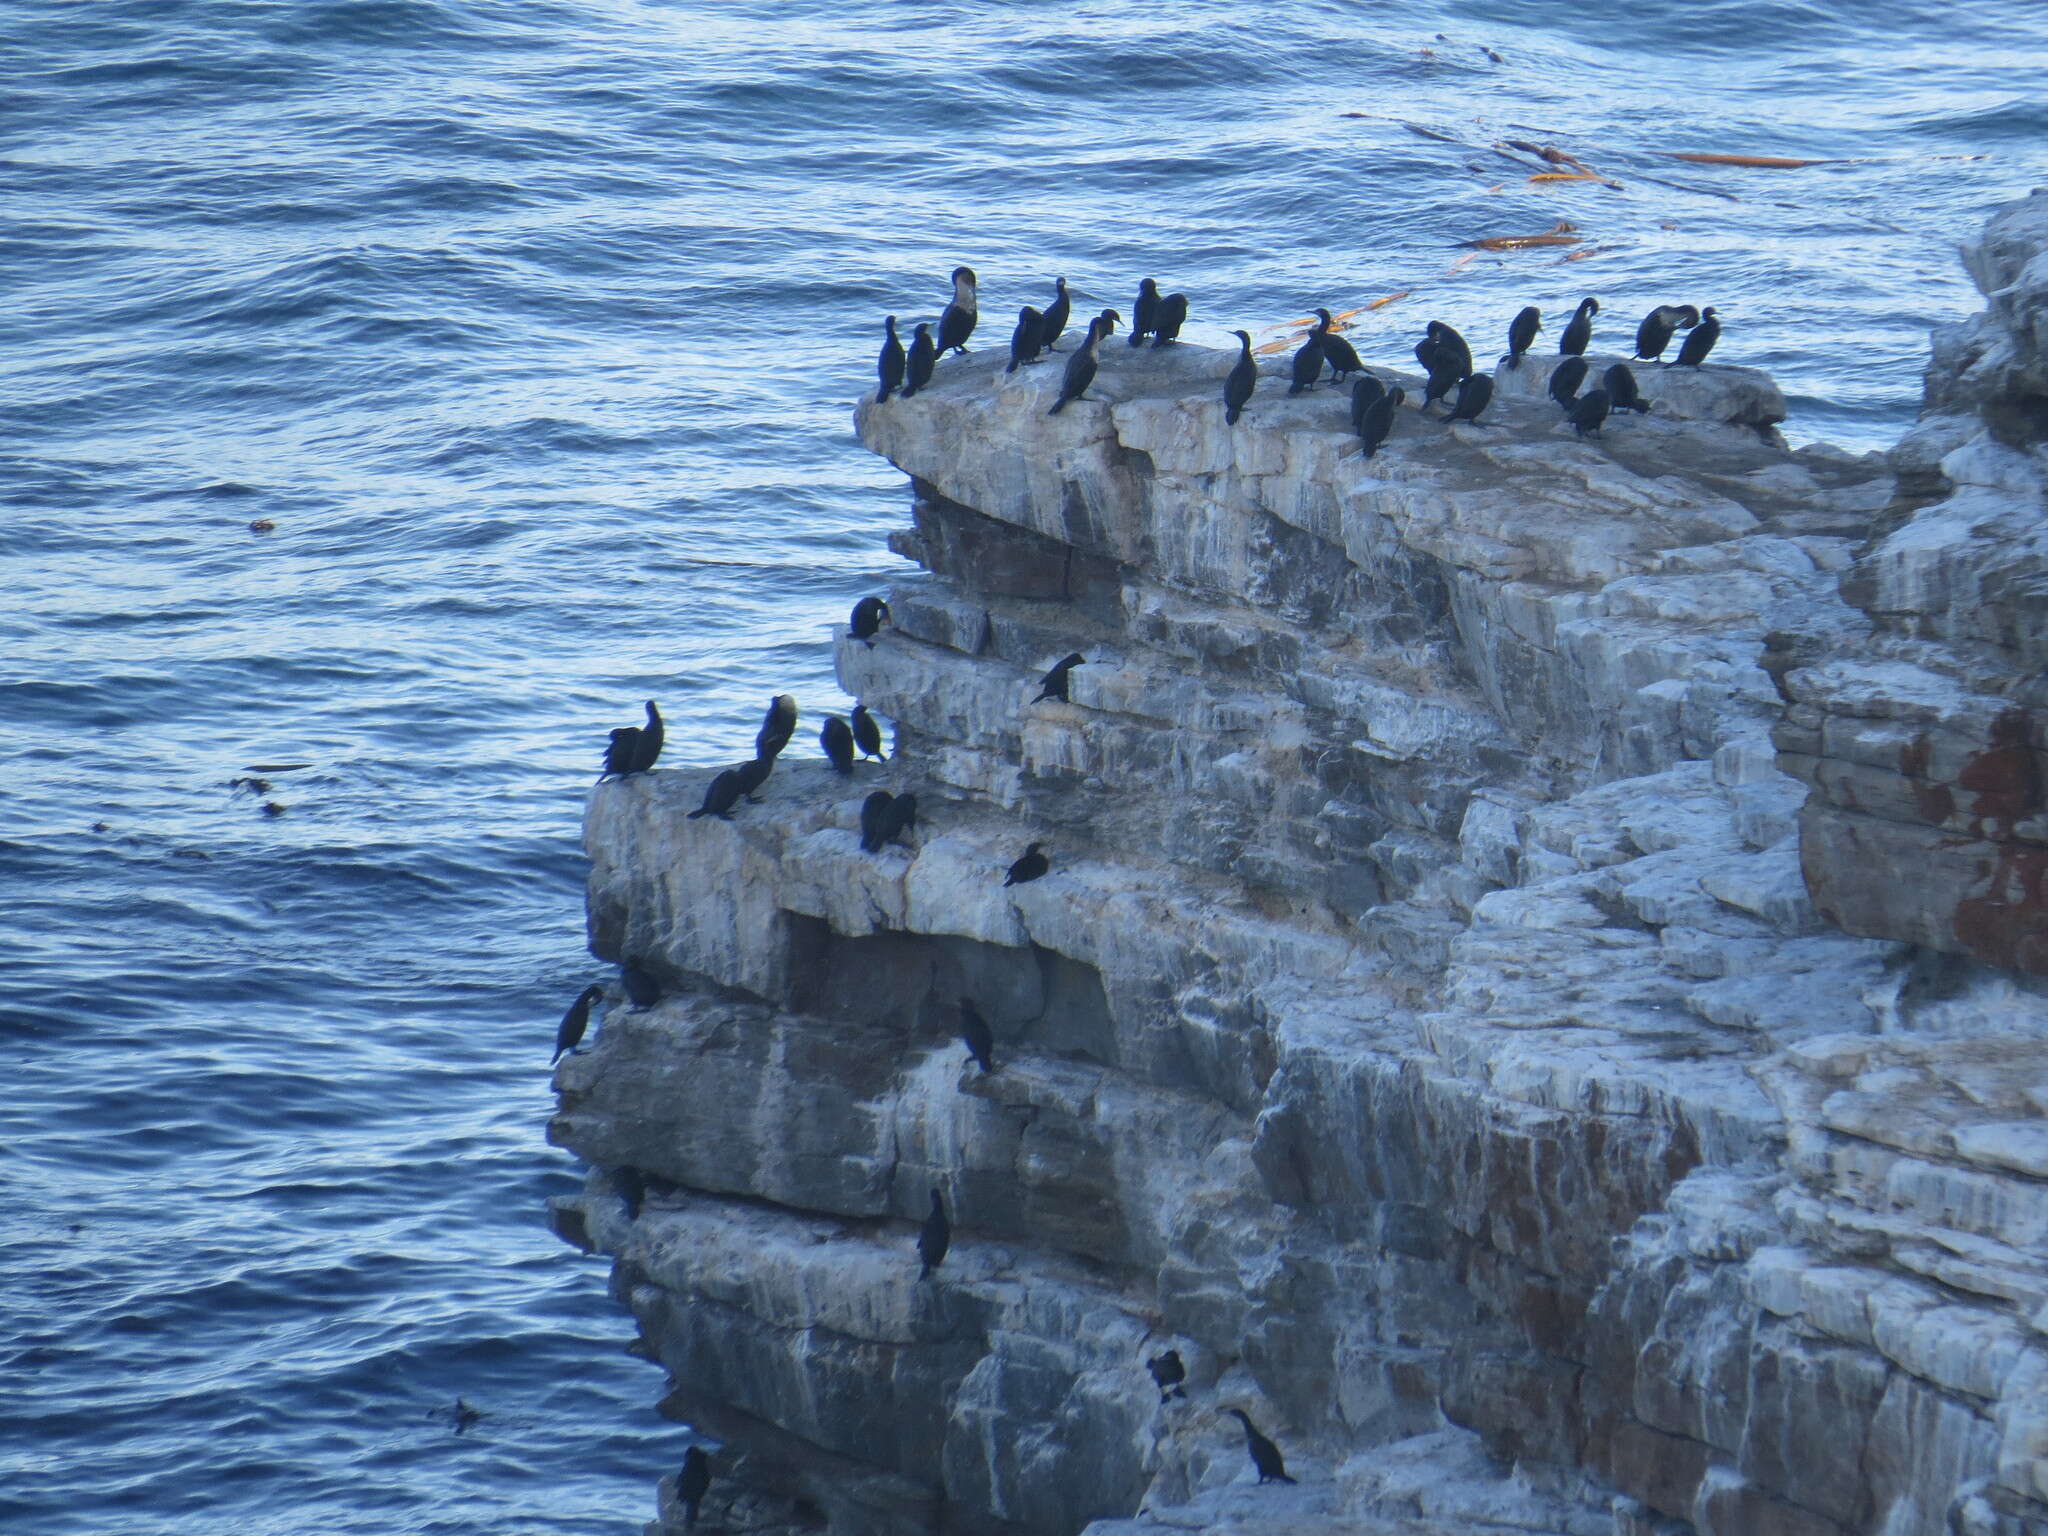 Image of Cape Cormorant